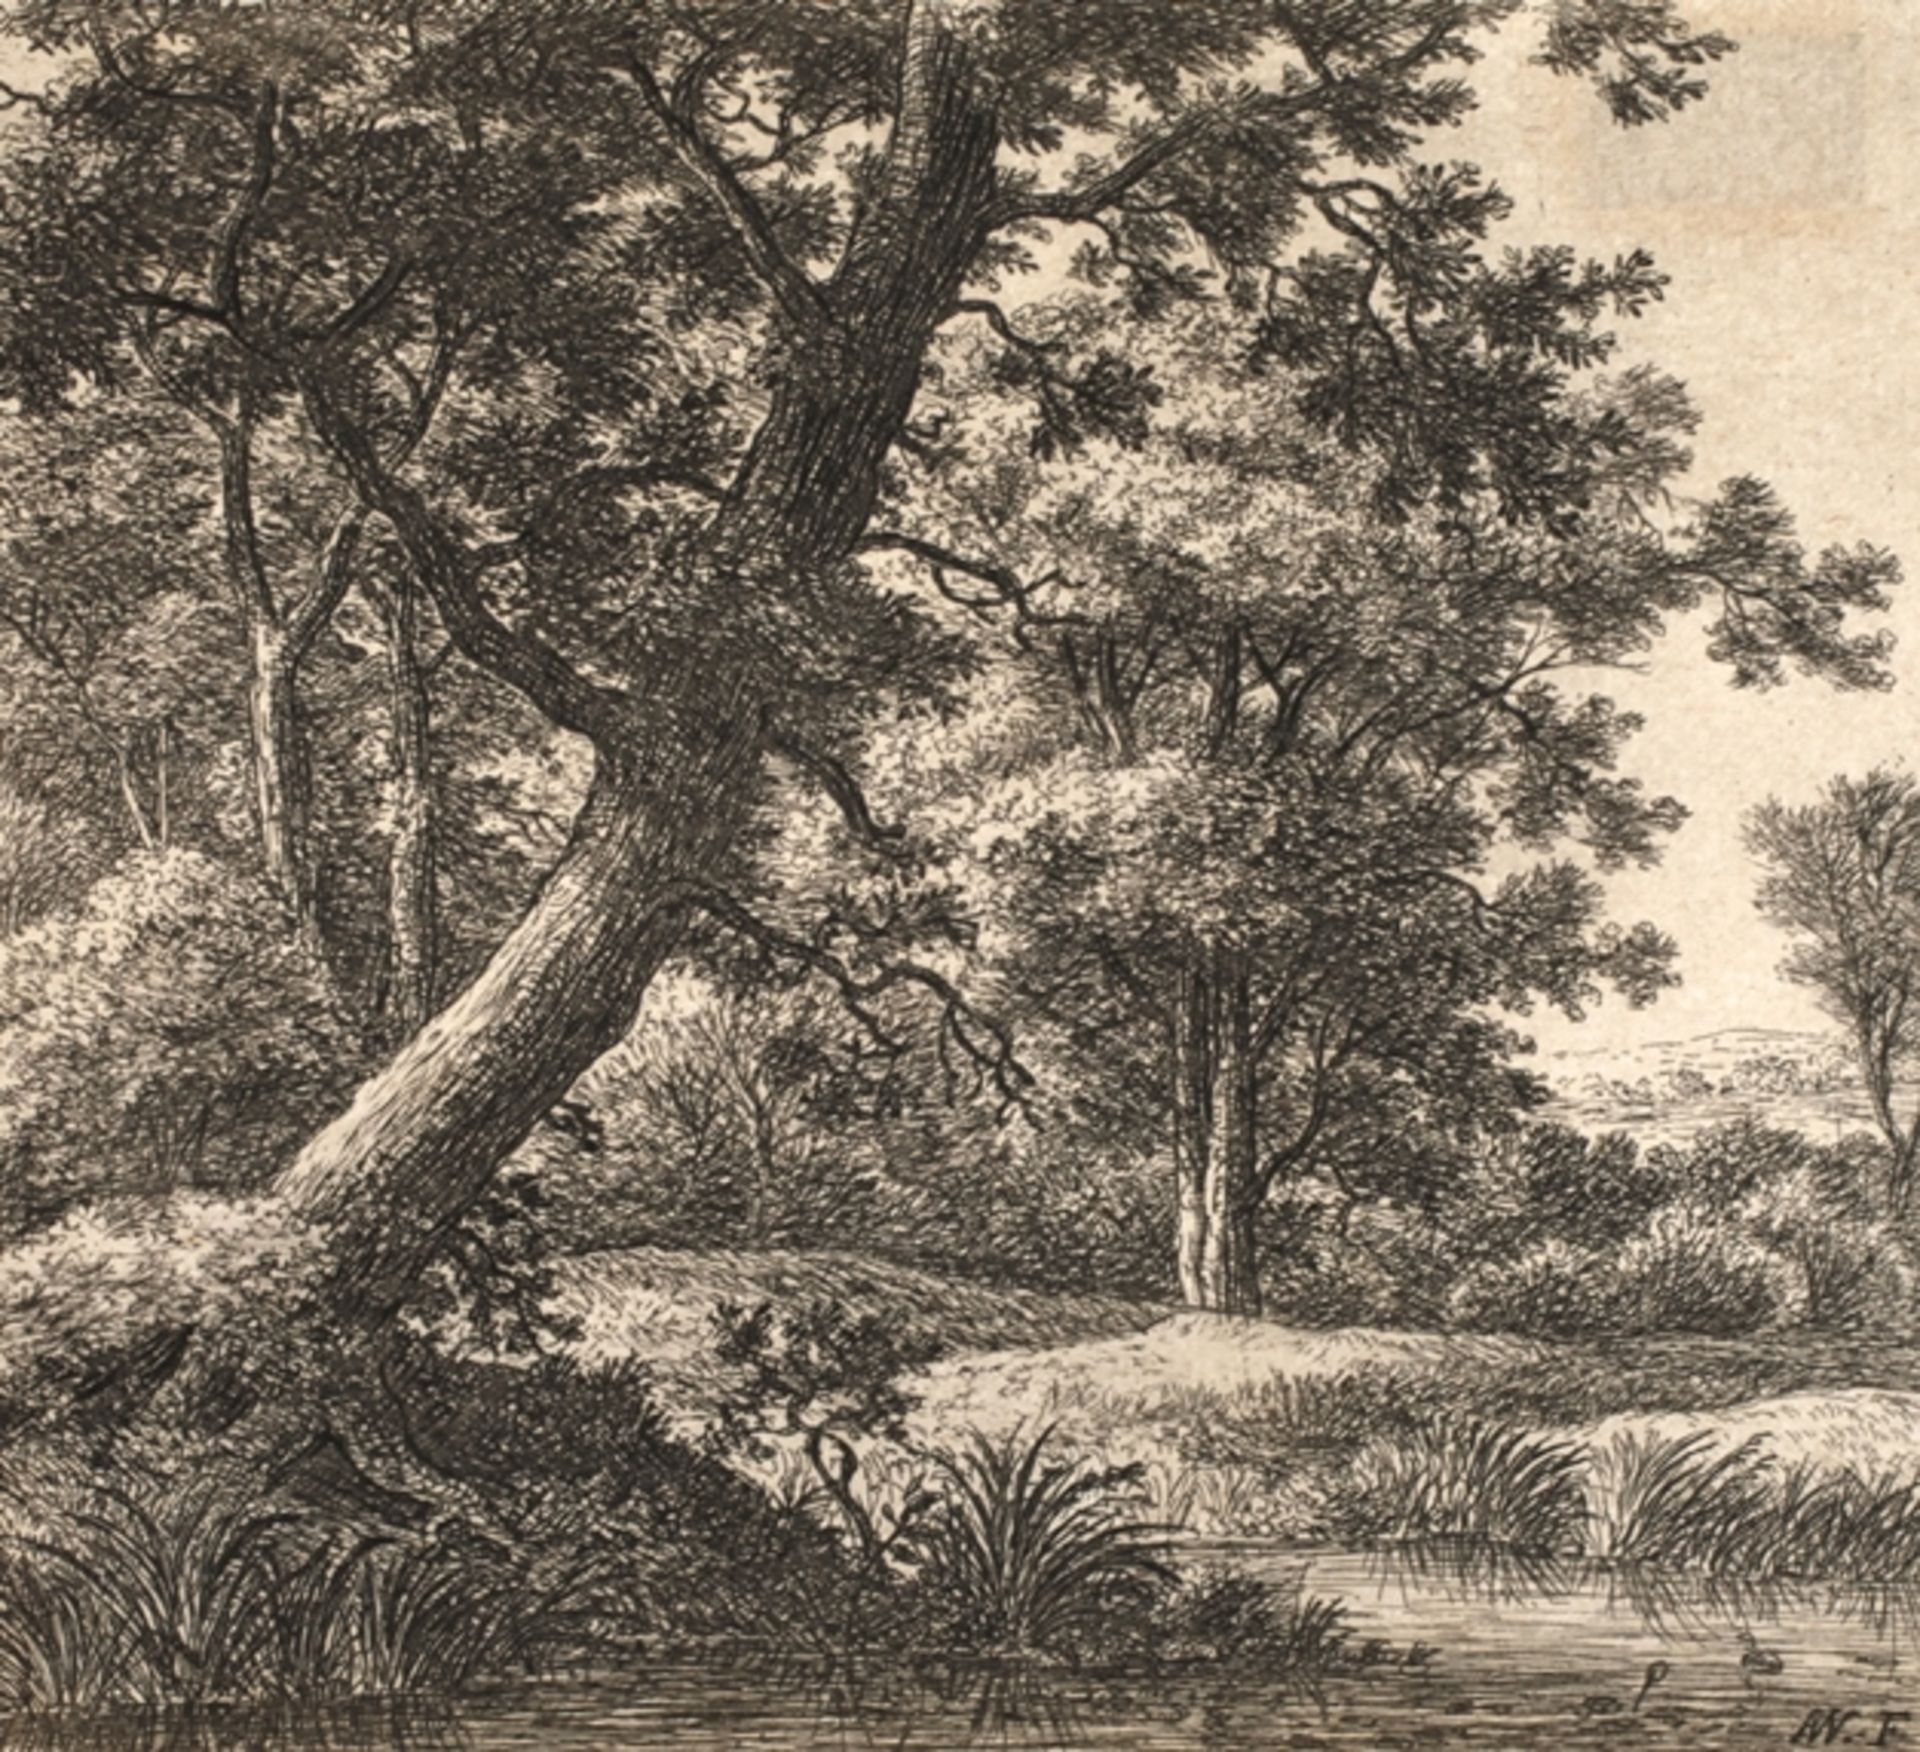 Anthonie Waterloo, Der schräg wachsende Baum